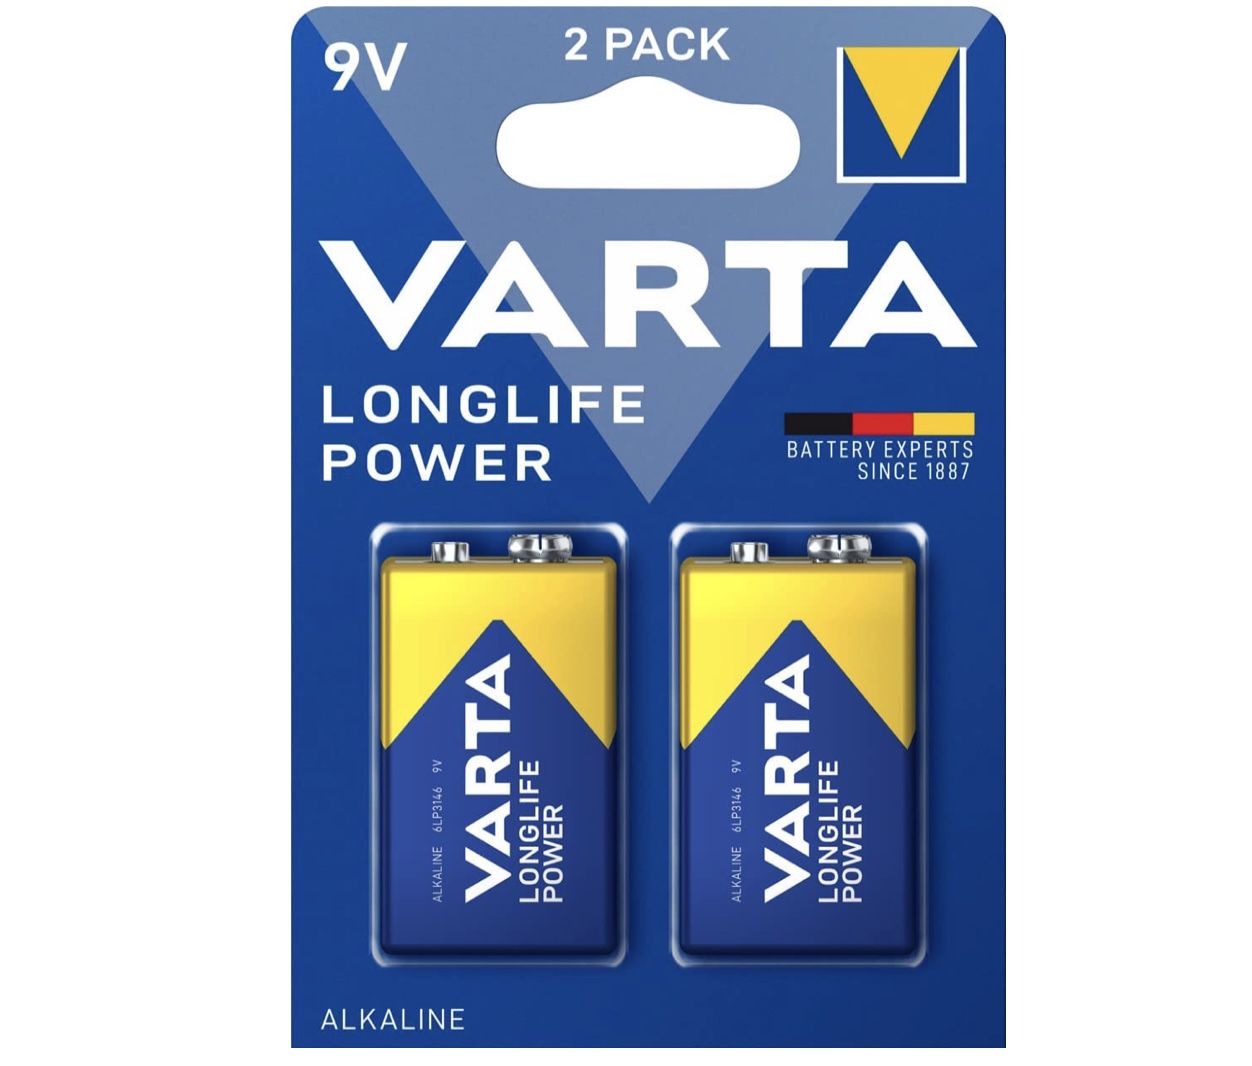 2er Pack VARTA Longlife Power 9V Block 6LR61 Batterie für 3,29€ (statt 5€) &#8211; Prime